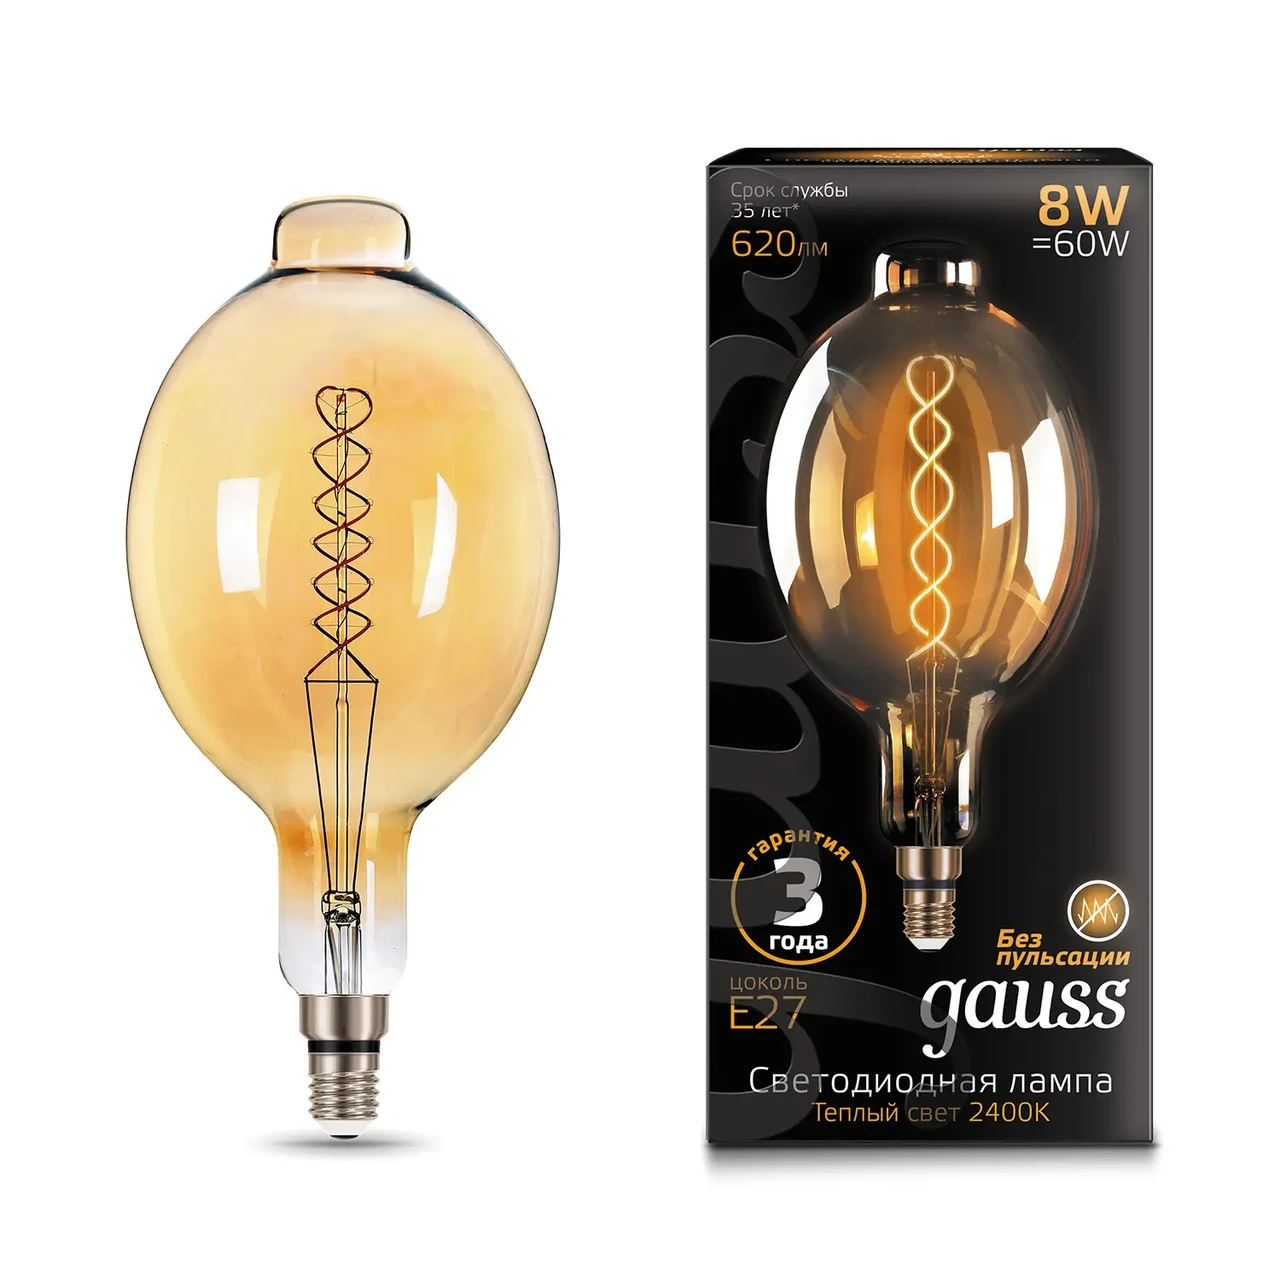 Лампа Gauss Filament BT180 8W 620lm 2400К Е27 golden flexible LED 1/6, фото 1